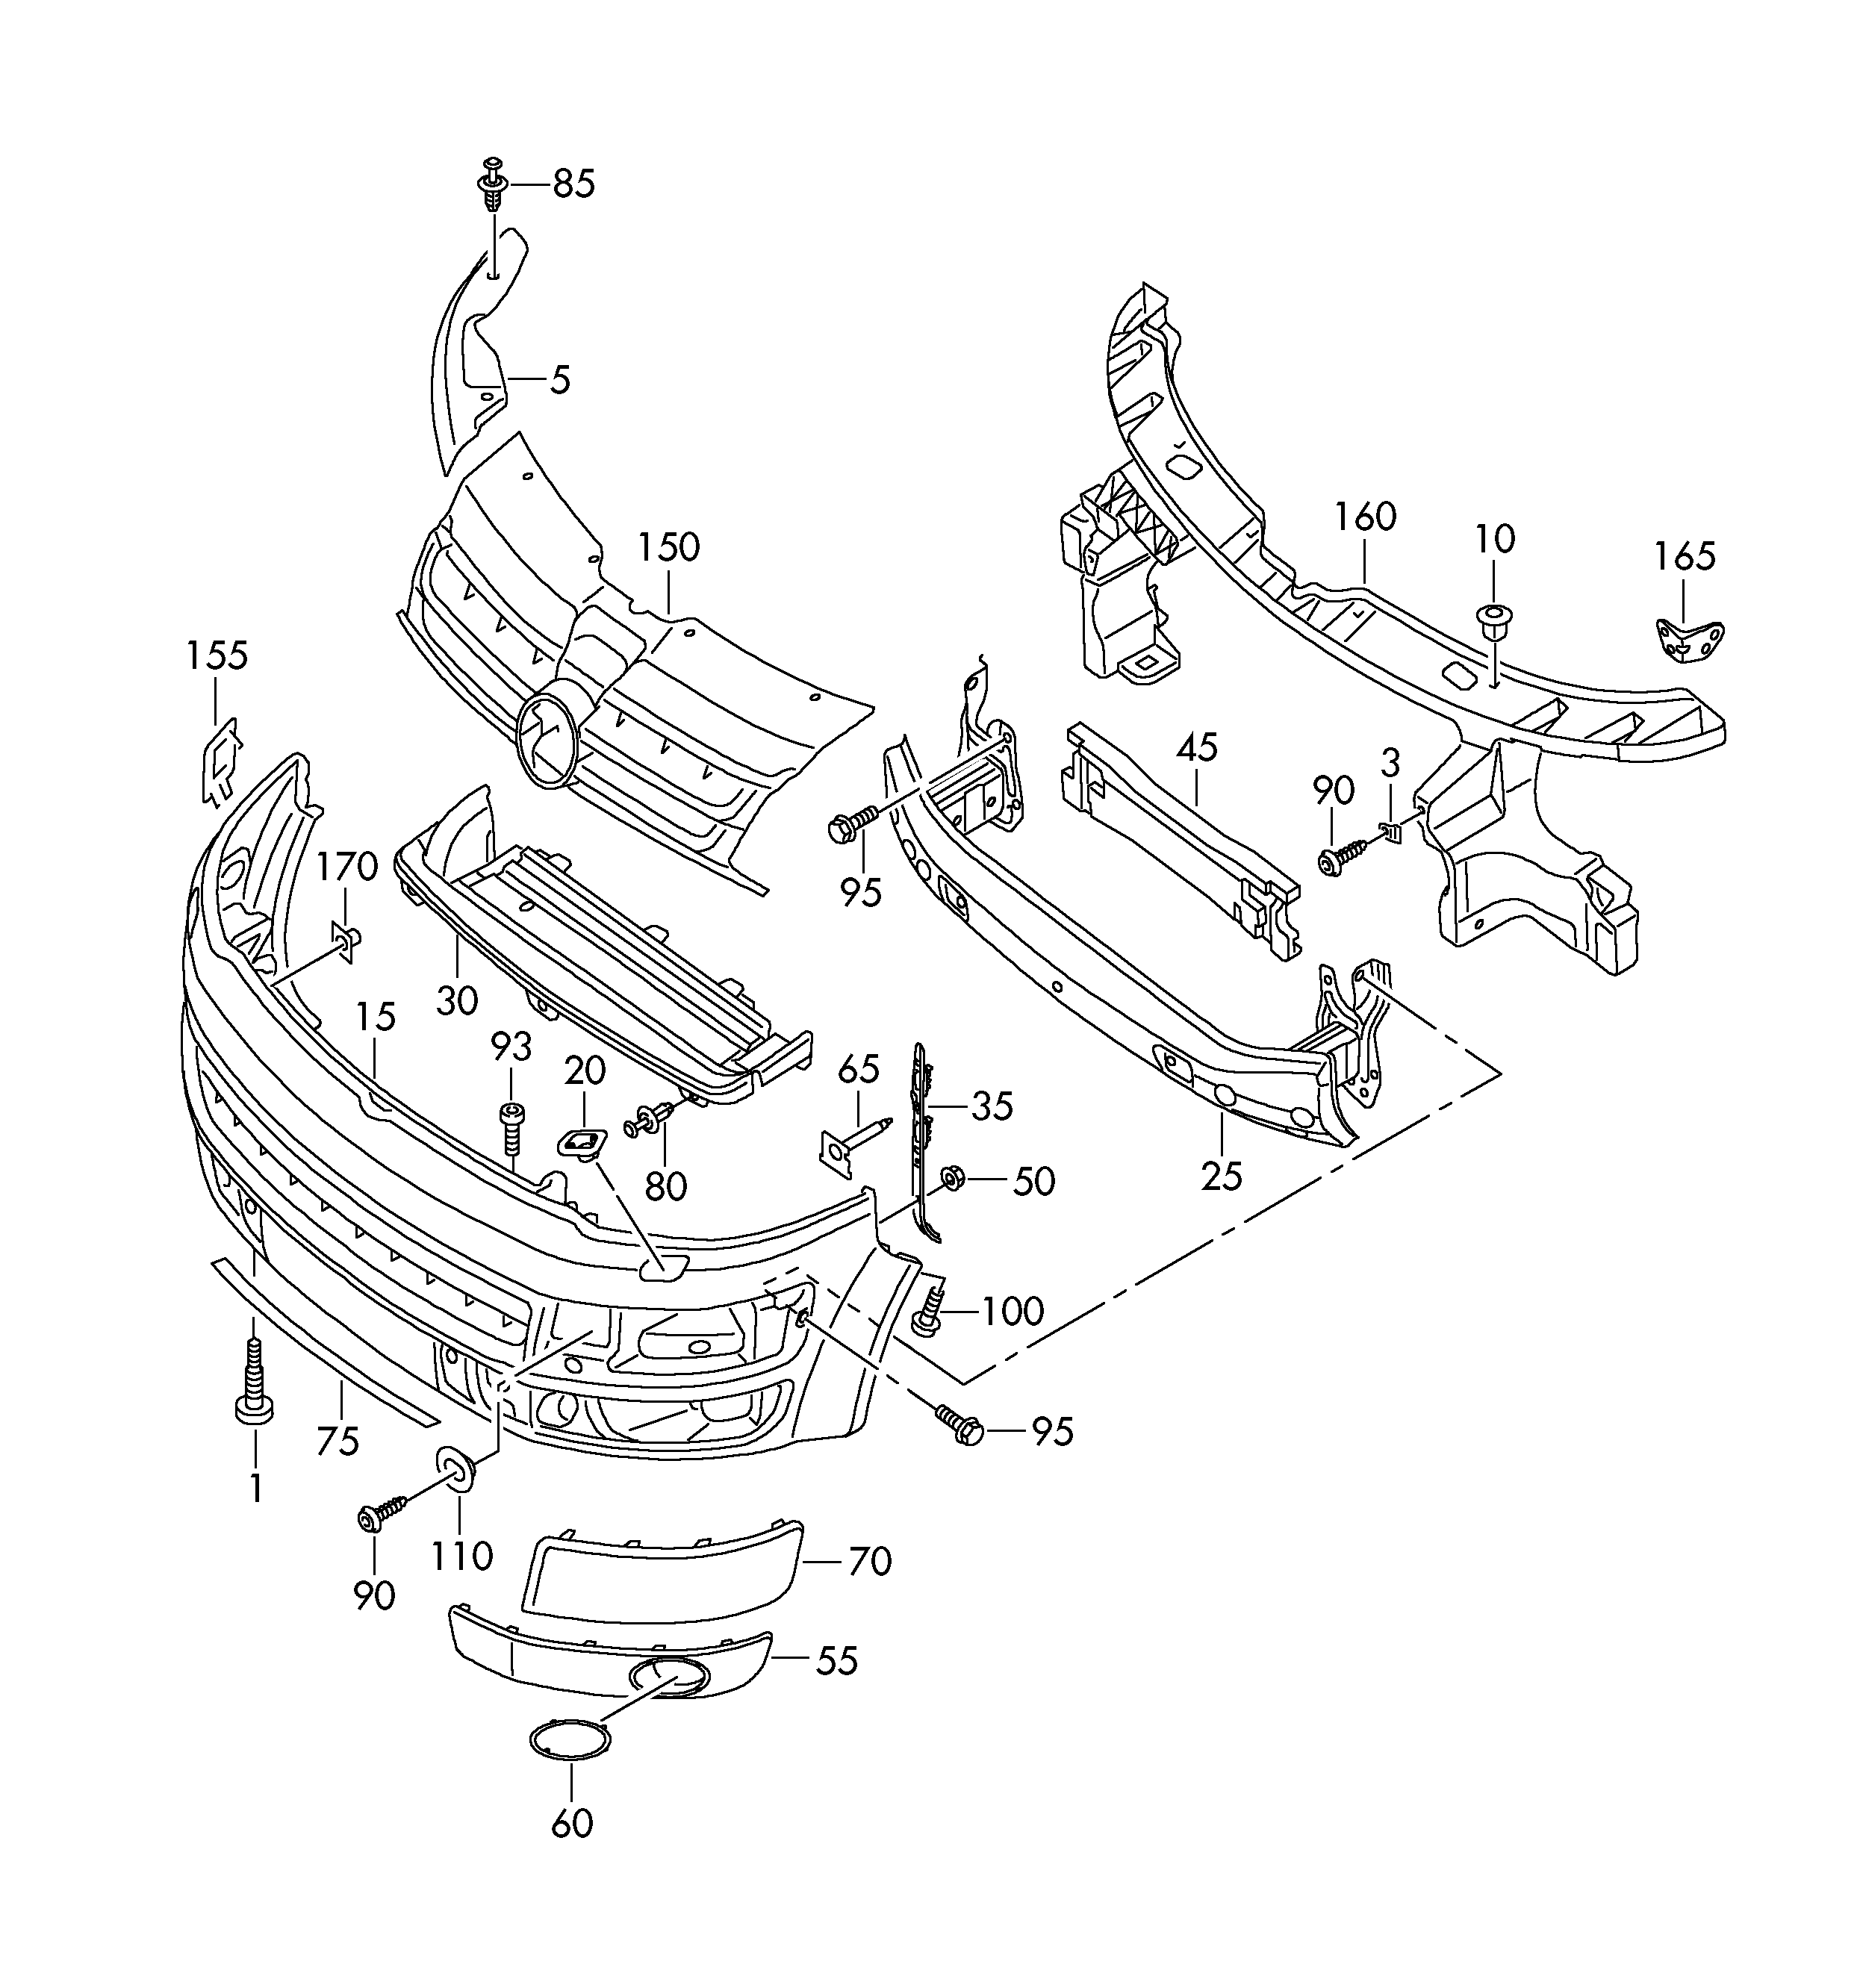 parachoques delantero - Transporter - tr